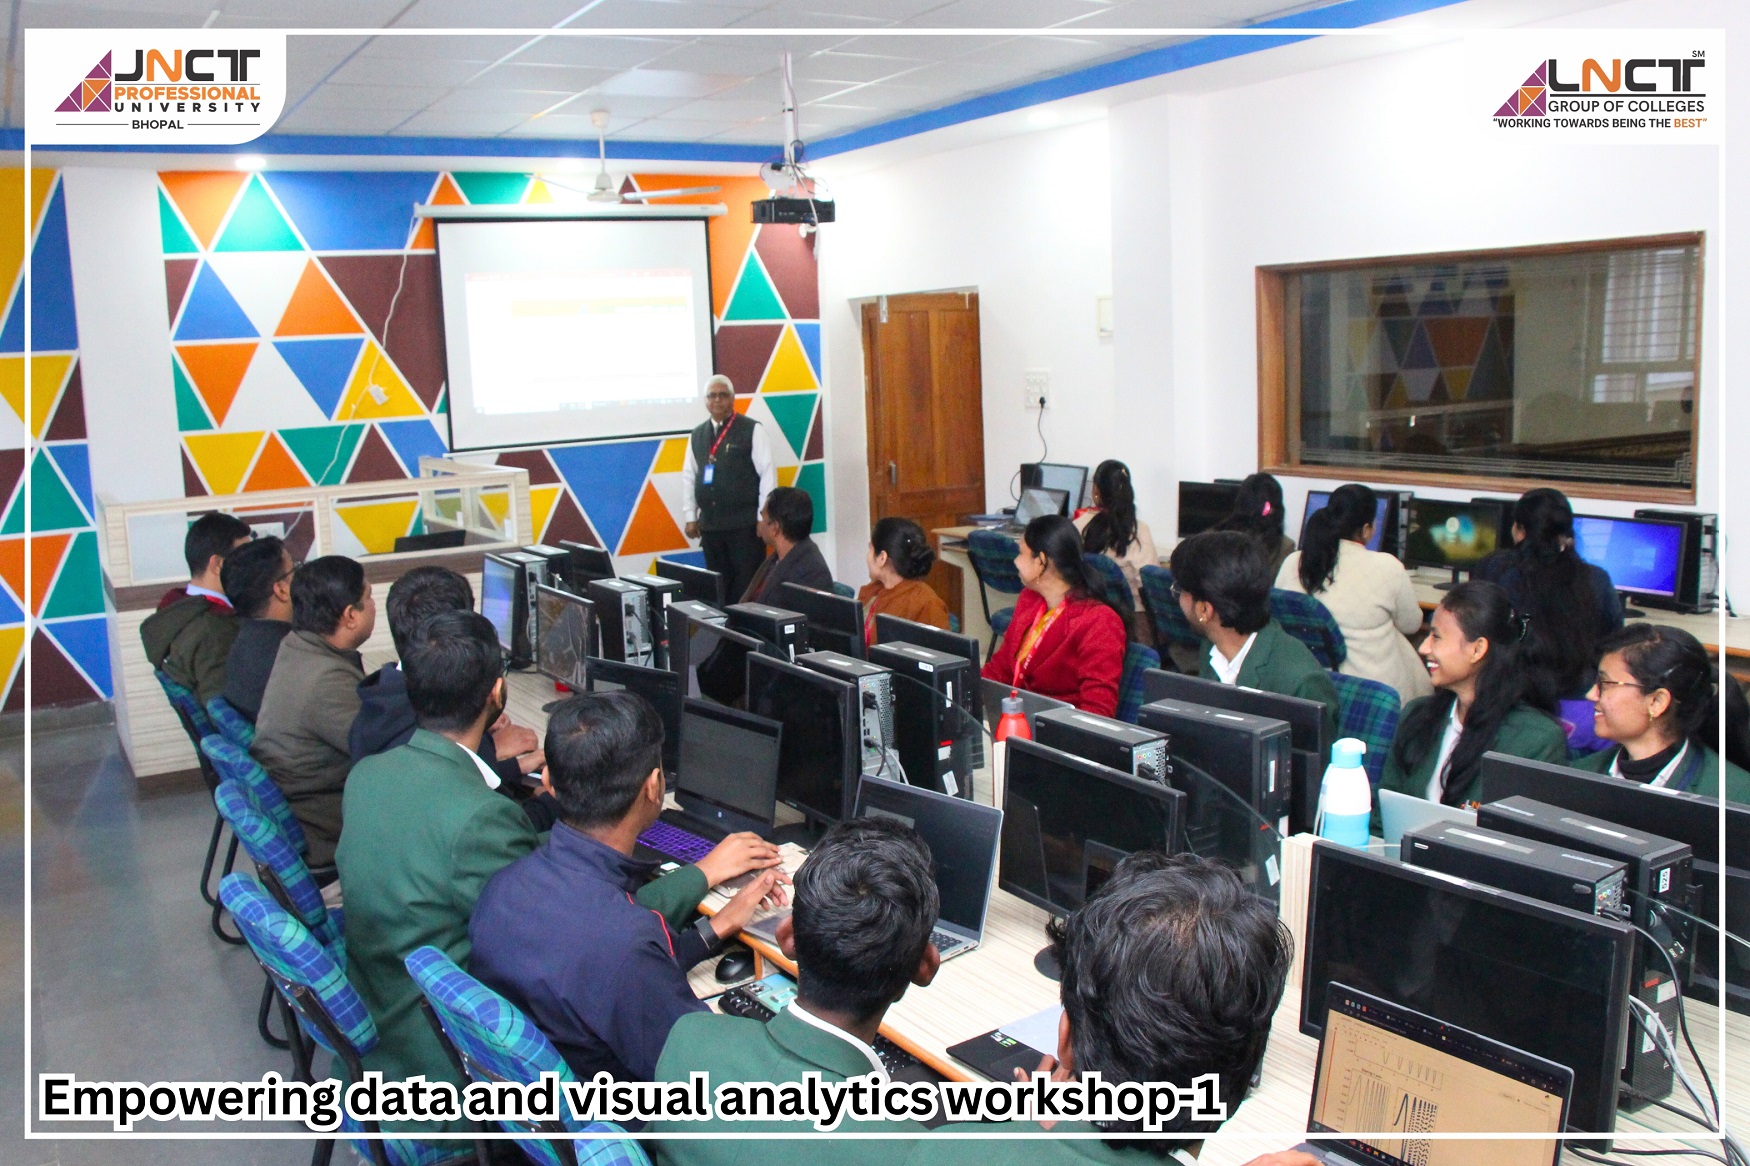 Workshop-I Closing: Innovative Insights at JNCT, Bhopal